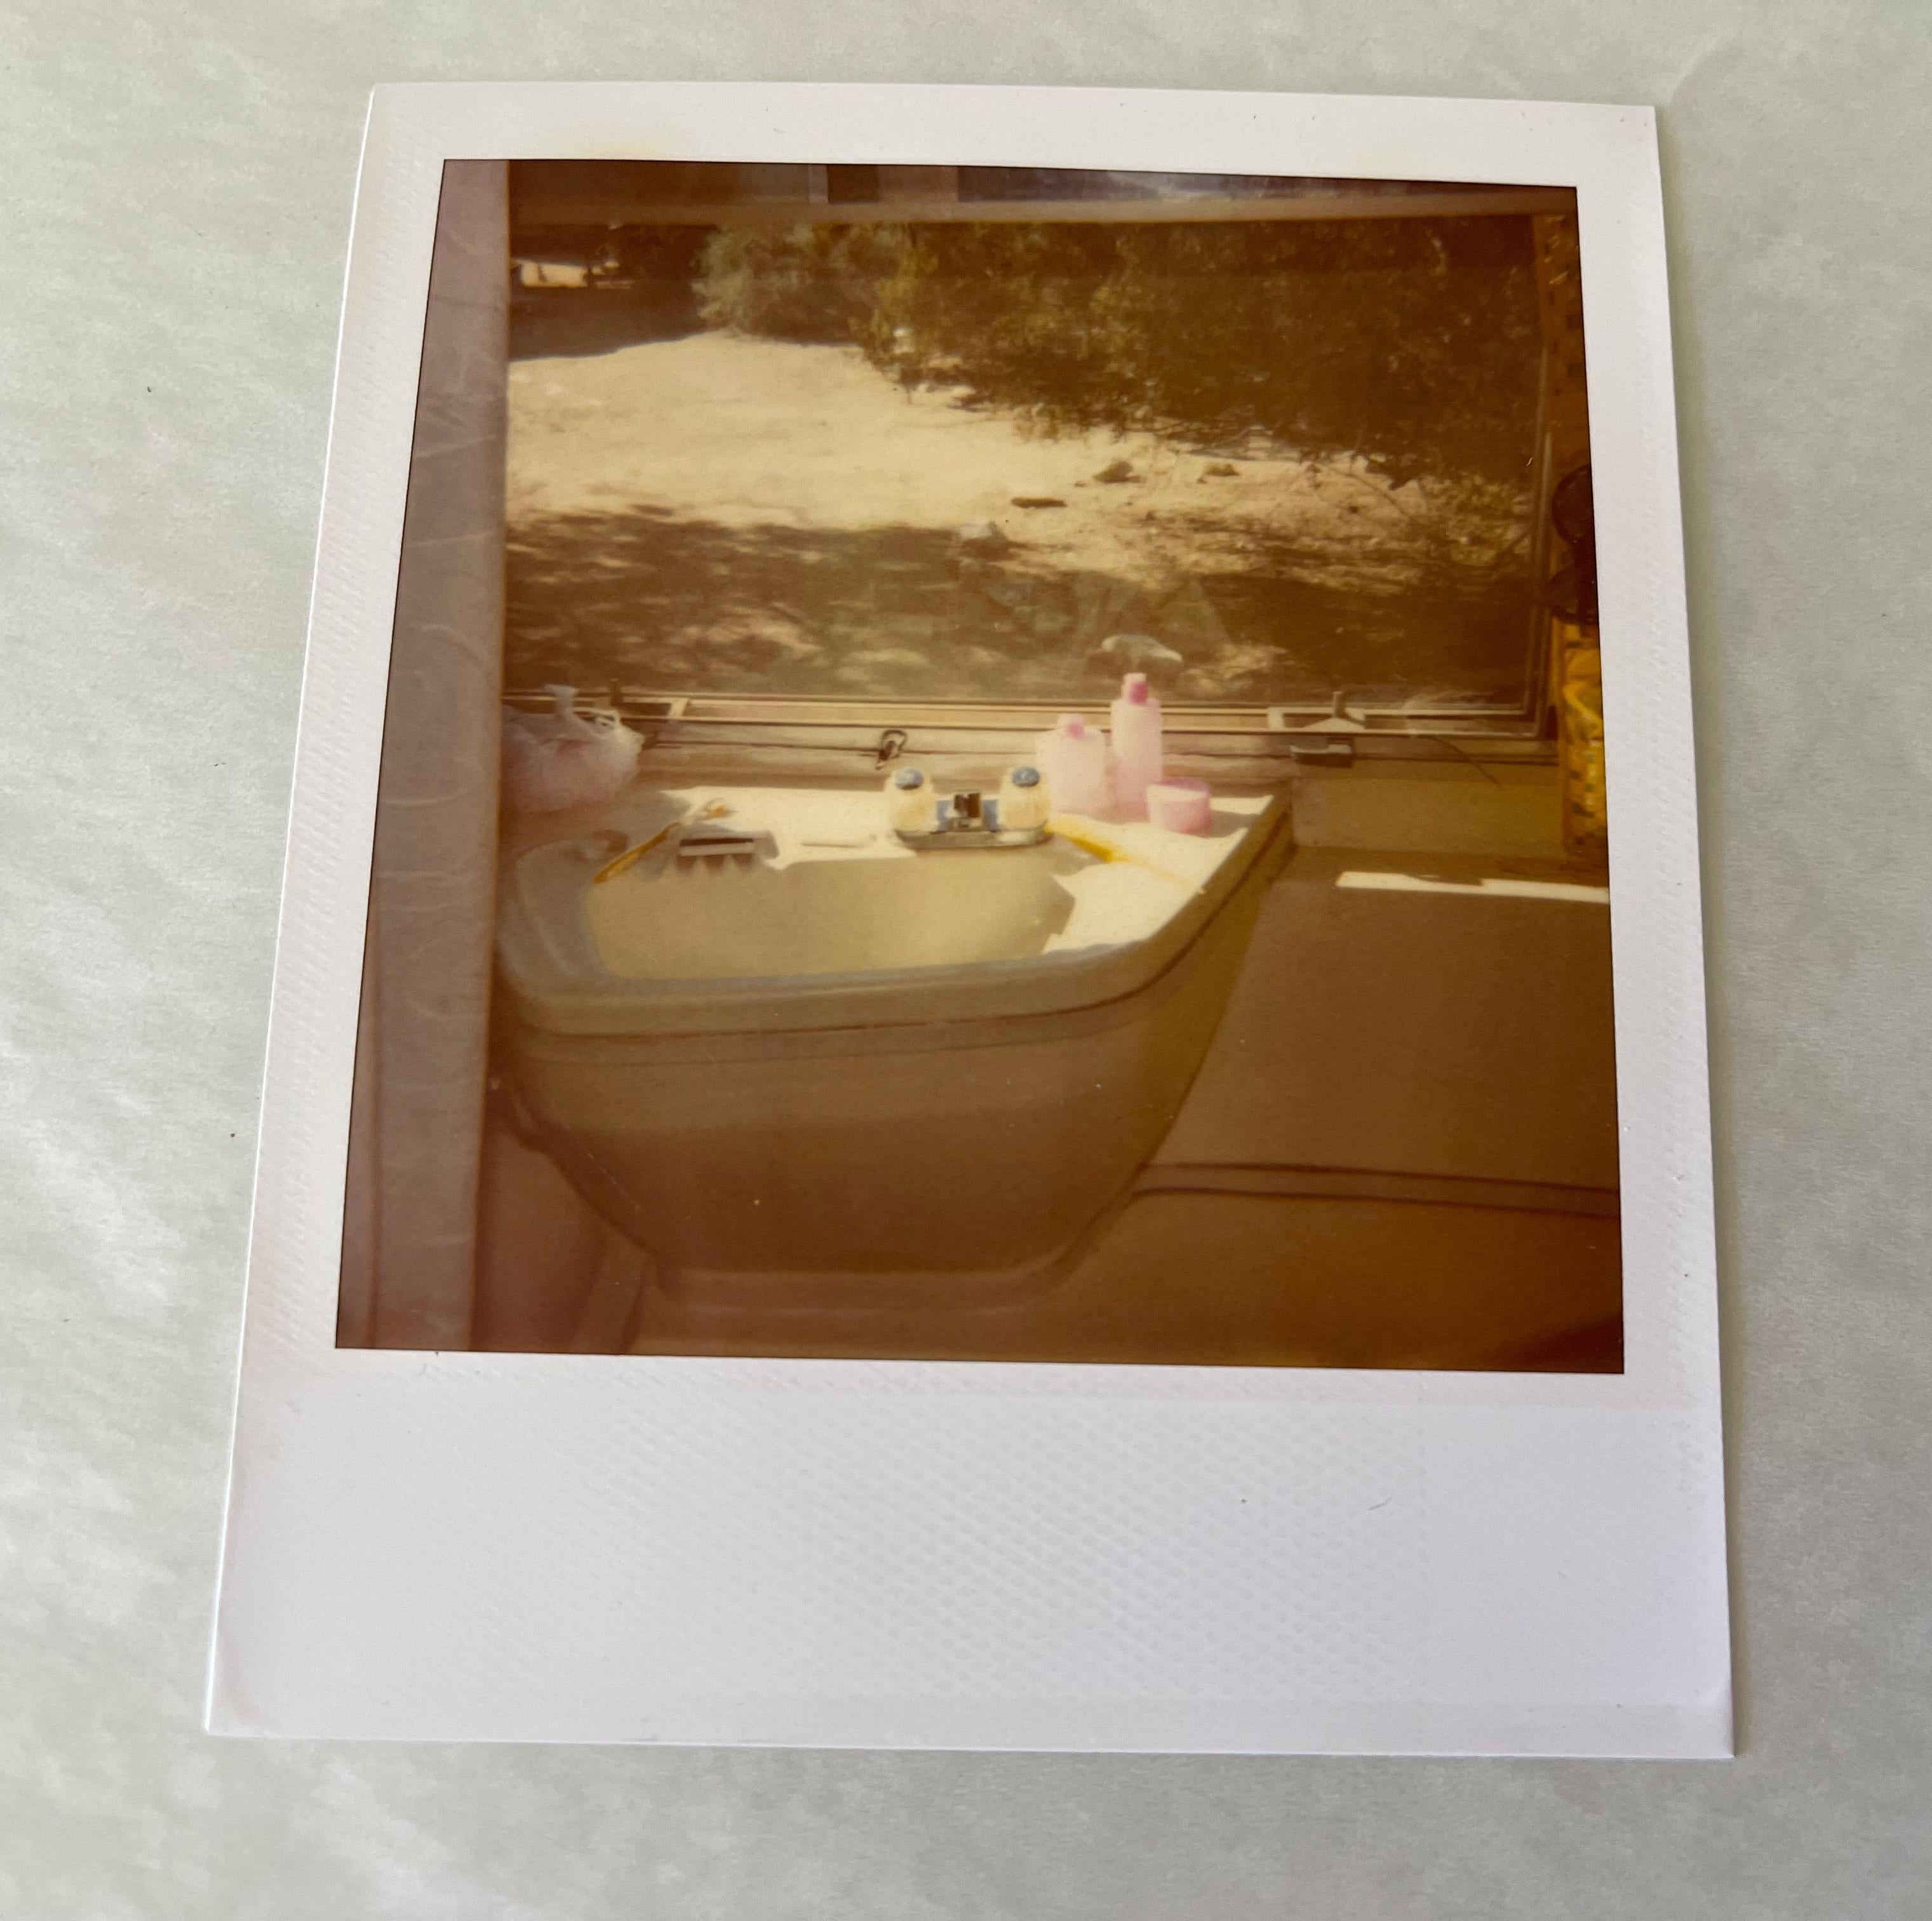 Coucher de soleil (Sidewinder) - 2006

Polaroid - Pièce unique 1/1, 
8,8 x 7,5 cm (zone d'image)
10,6 x 8,6 cm (y compris le cadre Polaroid blanc)
Inv. d'artiste #23636. 
Signé au verso. 
Non monté. 

Les situations scintillantes de Stefanie